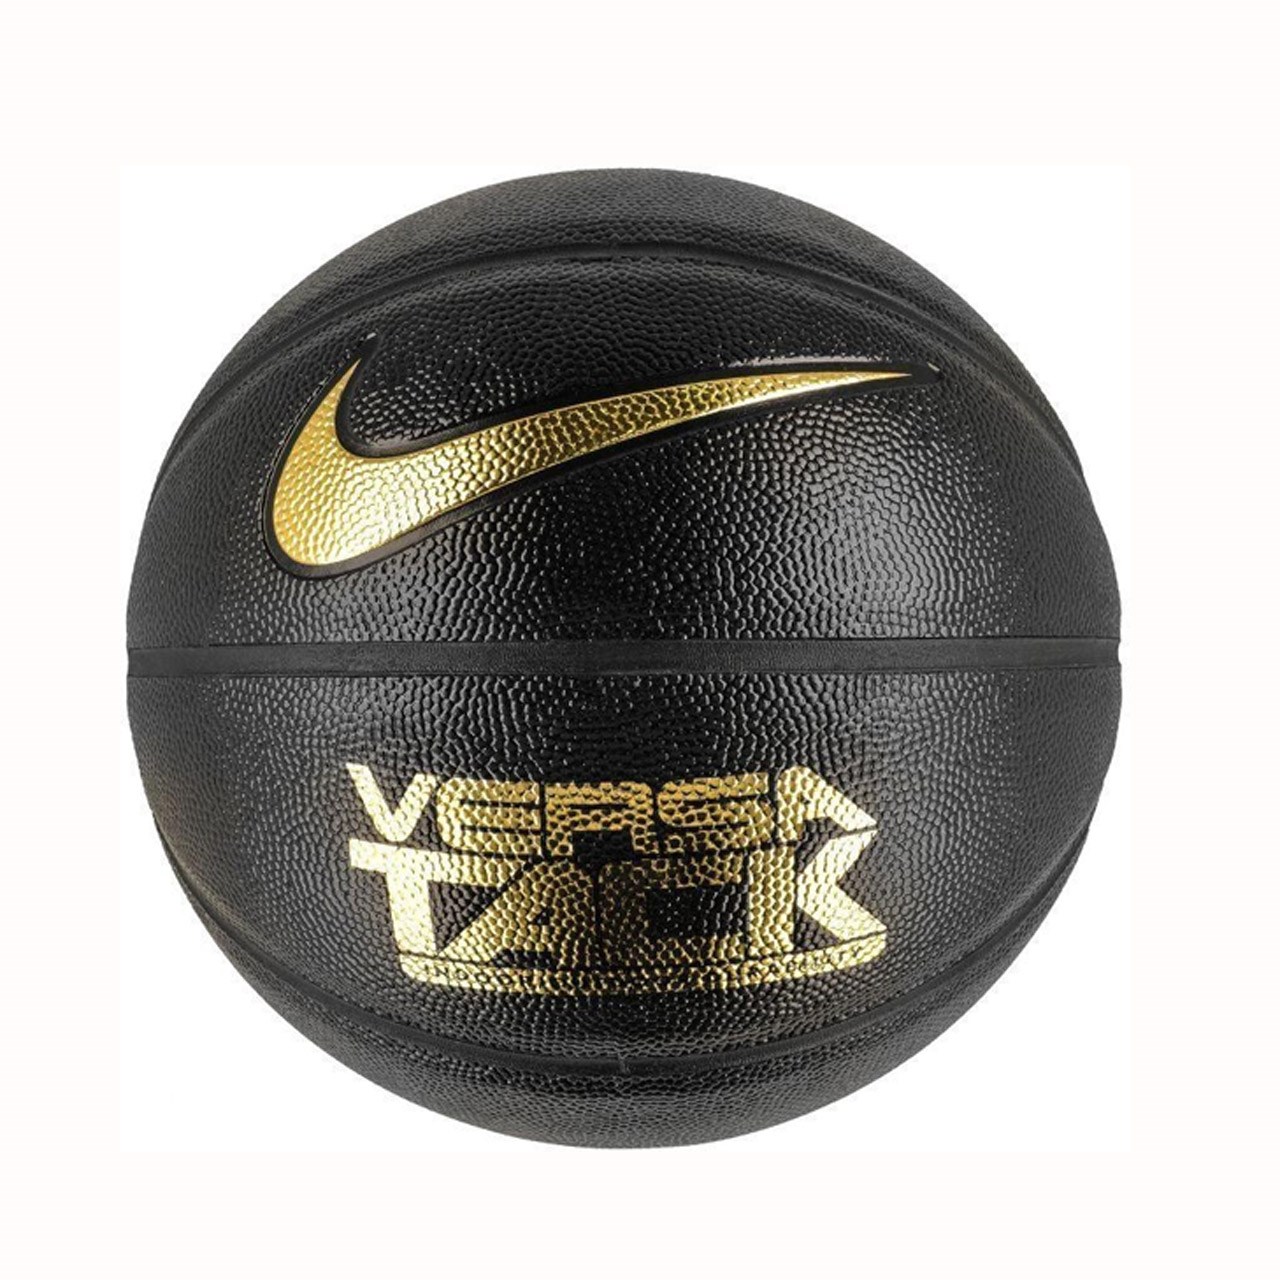 توپ بسکتبال نایکی مدلVersa Tack سایز 7